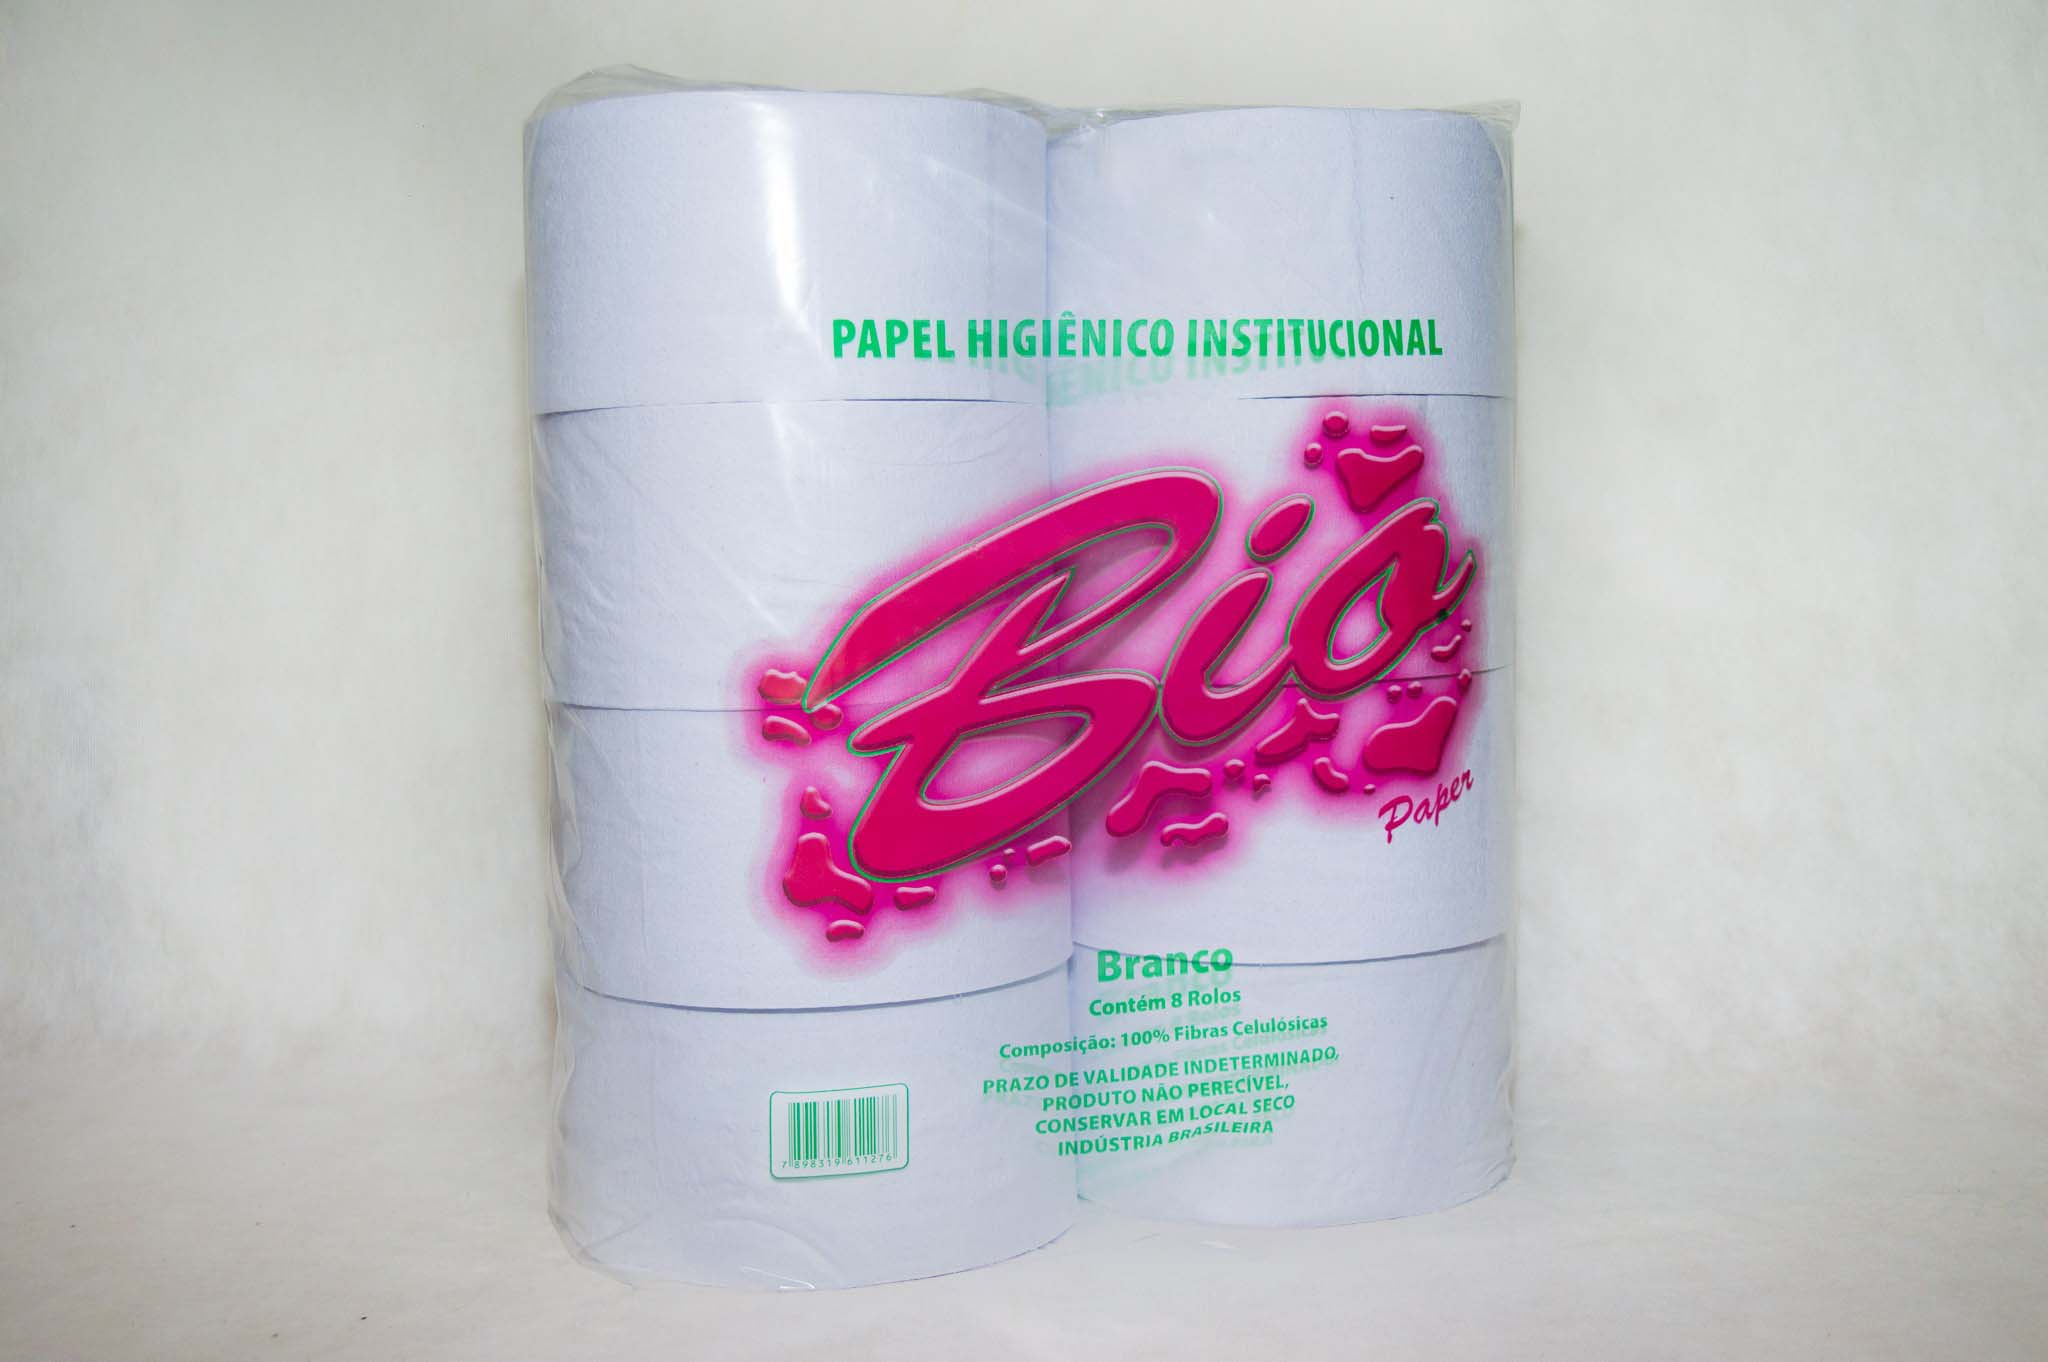 Indústria de papel higiênico sp